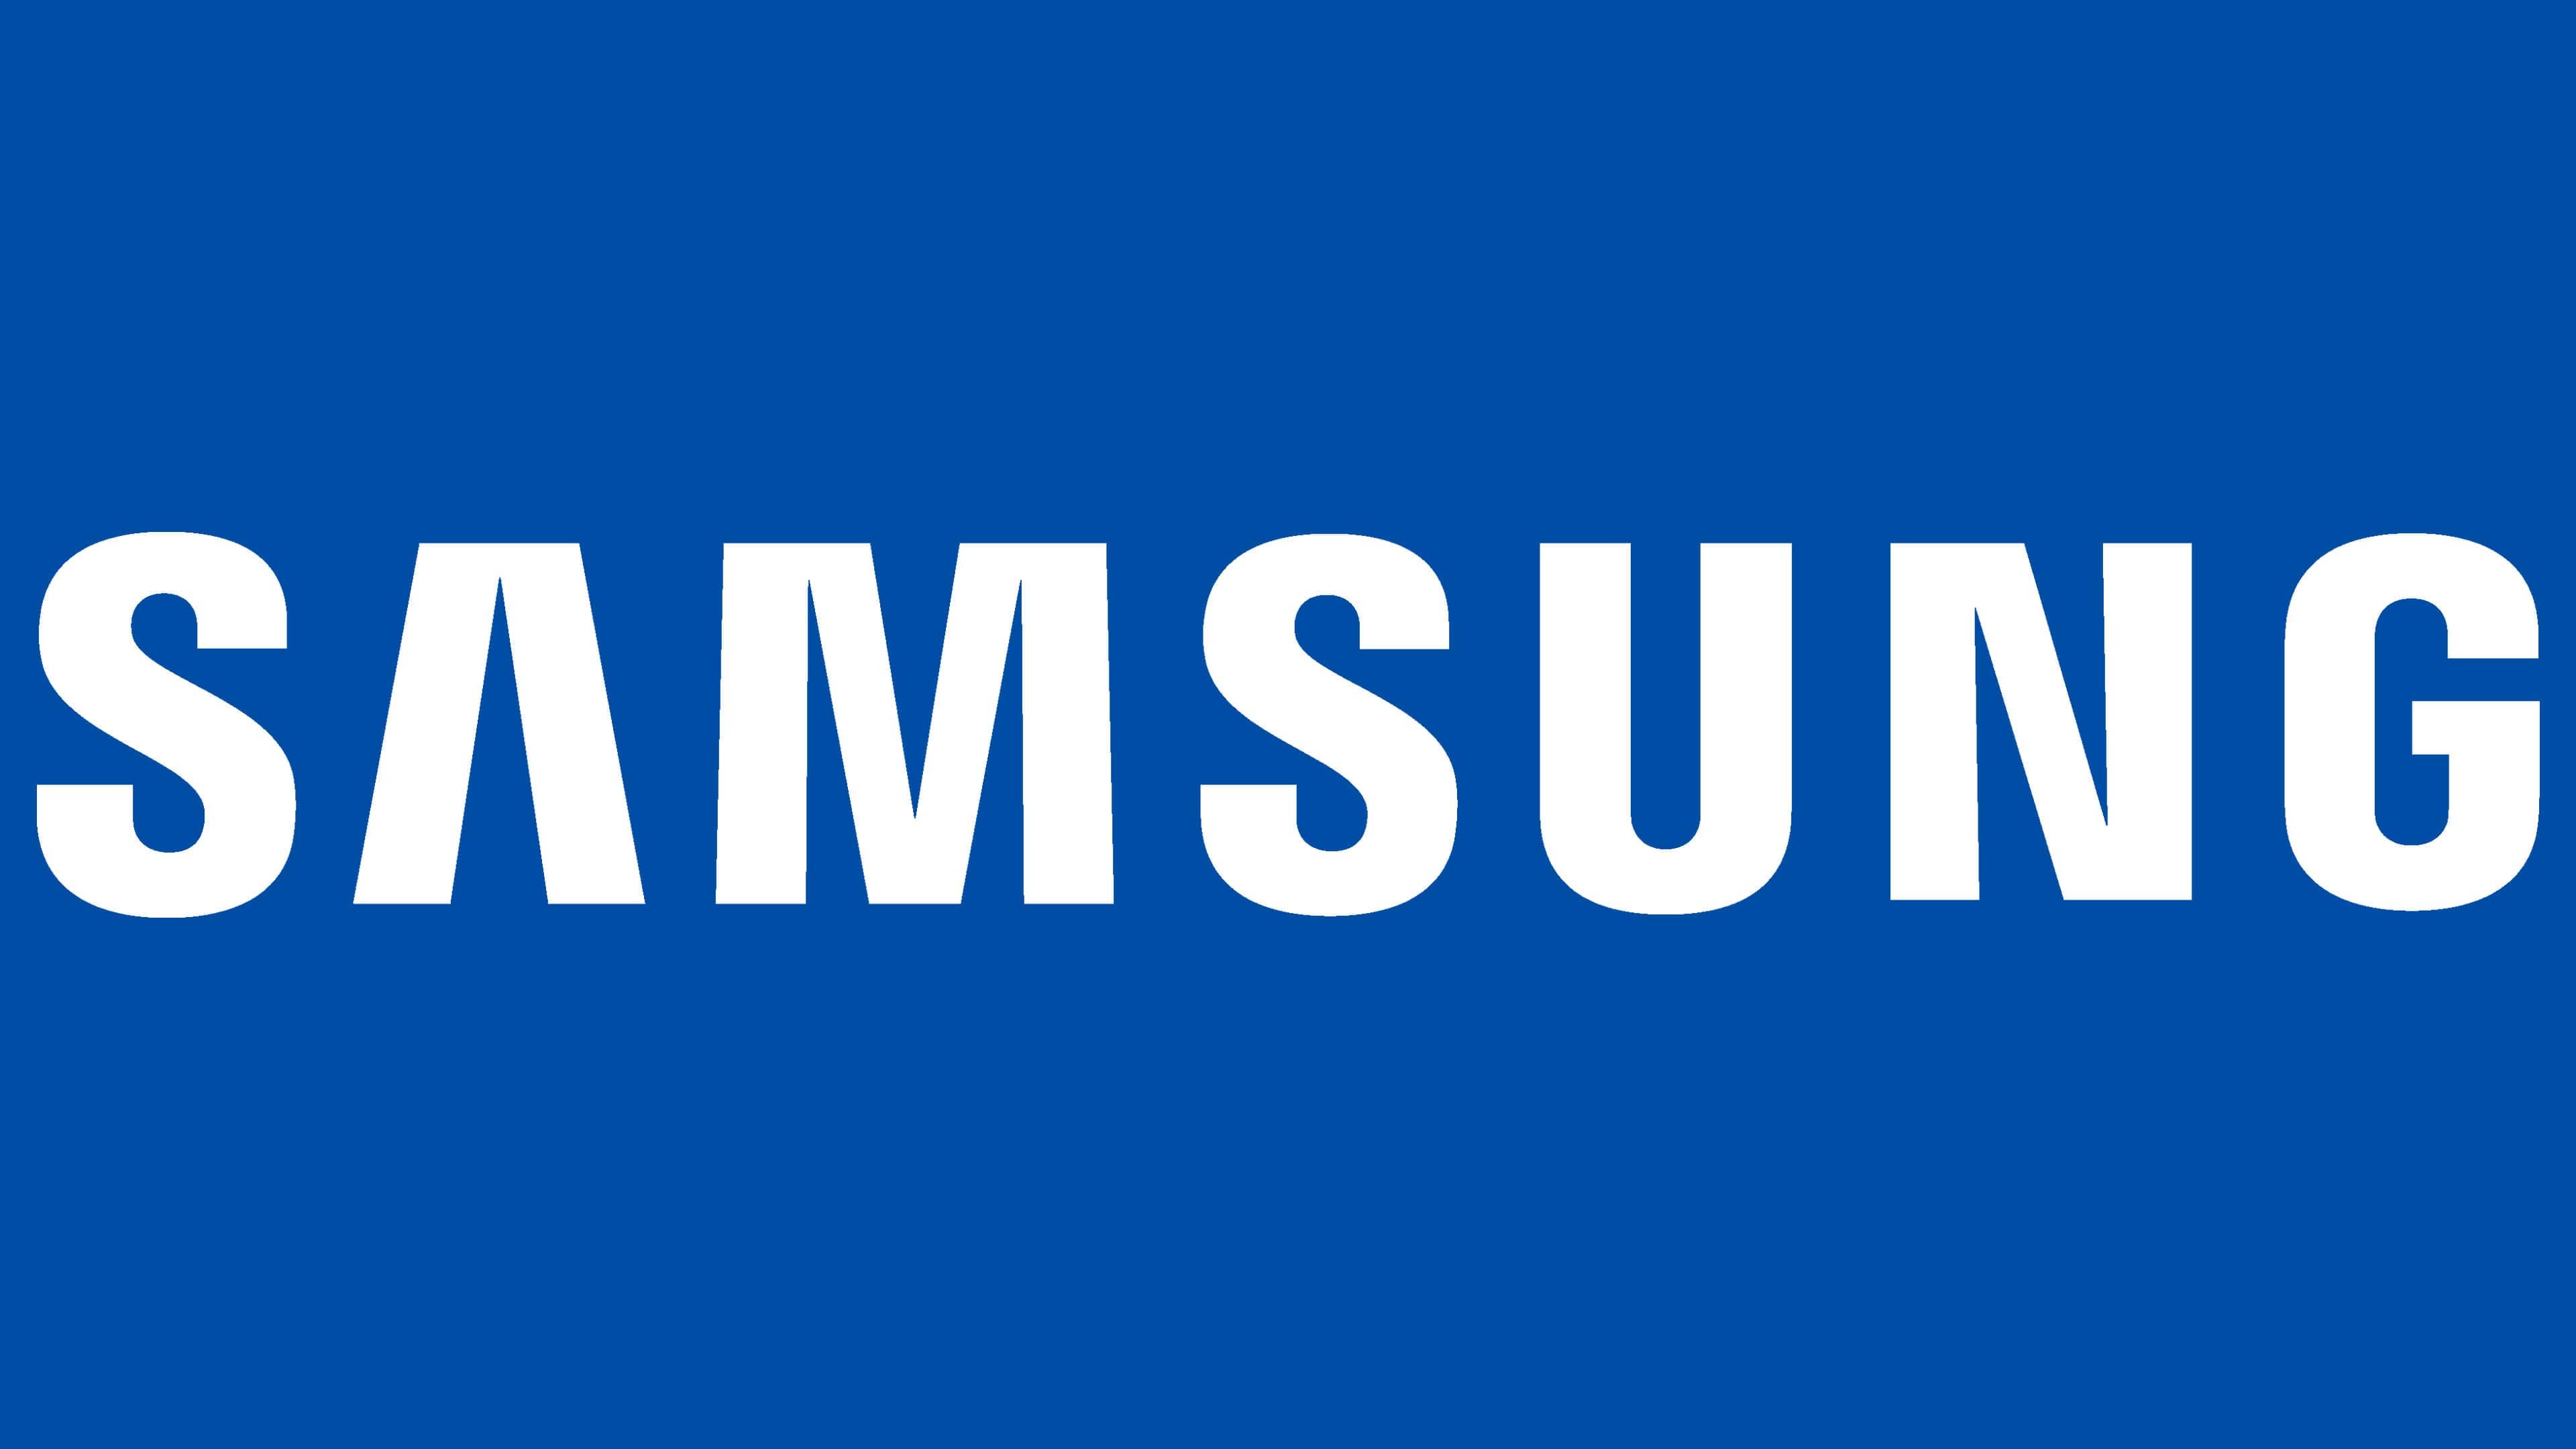 Samsung Logo kết hợp với những biểu tượng và lịch sử của thương hiệu cùng chất lượng PNG sẽ giúp bạn truyền tải thông điệp của mình một cách hiệu quả.